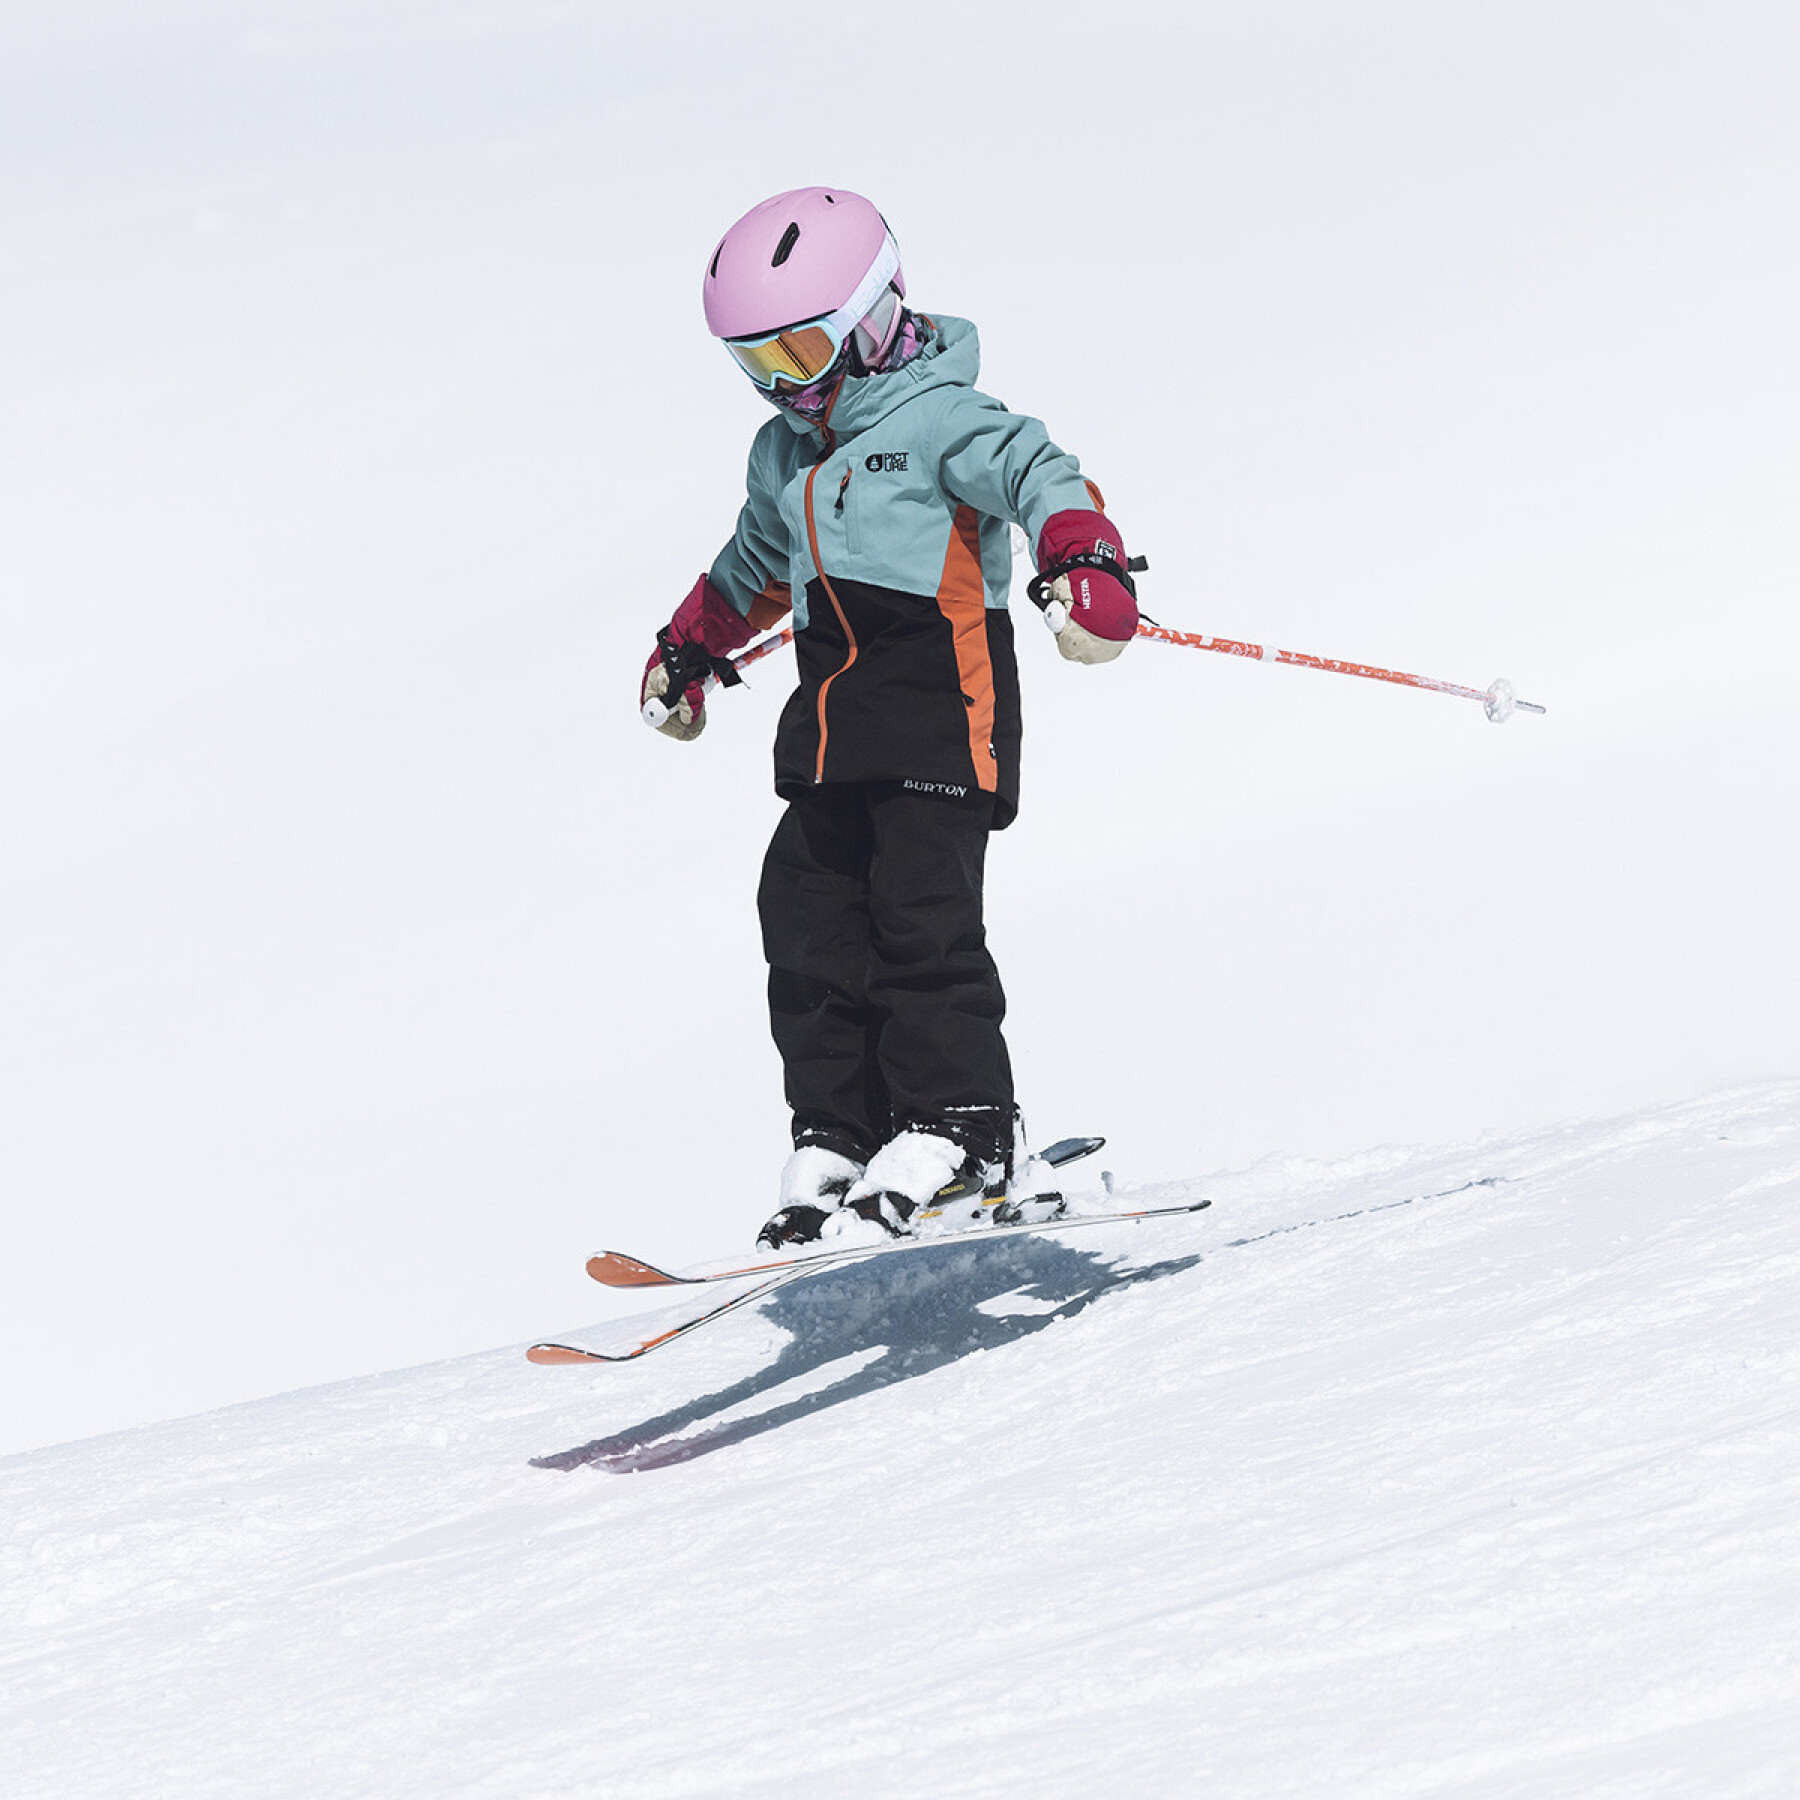 Casque de ski enfant Bollé Atmos